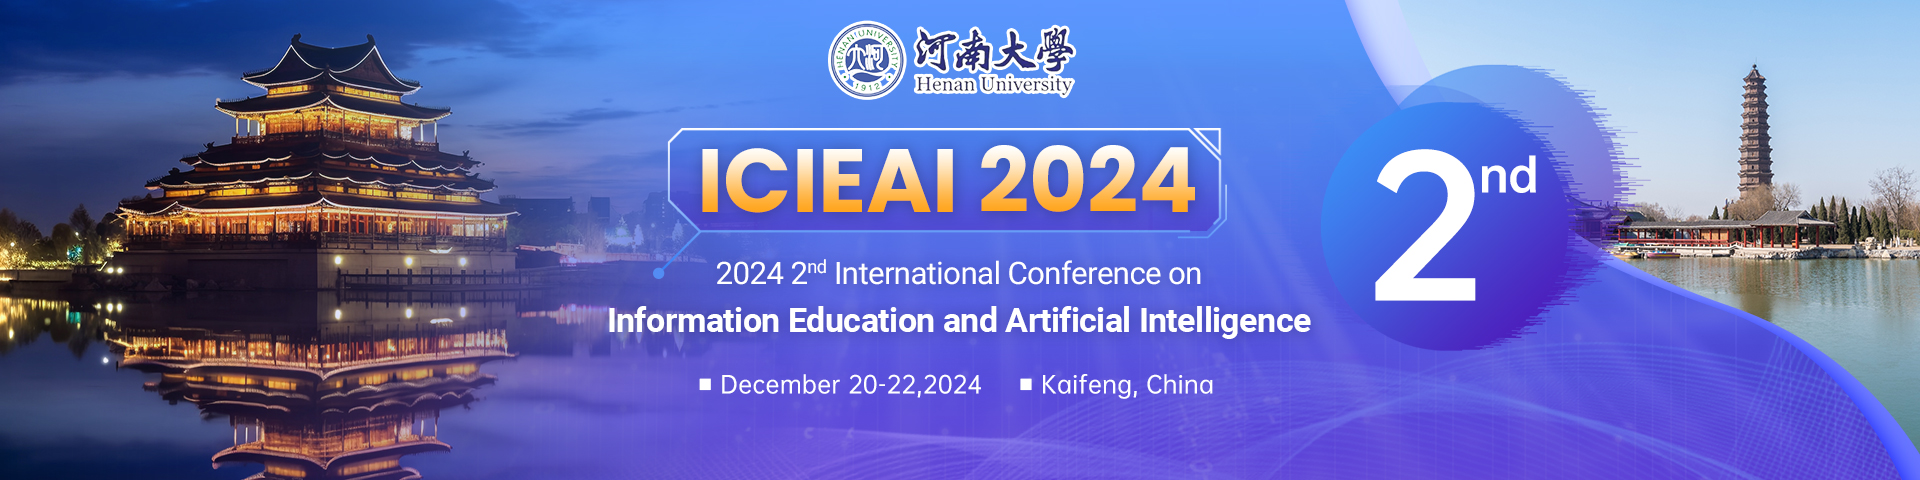 12月开封-ICIEAI-2024-会议官网英文.jpg